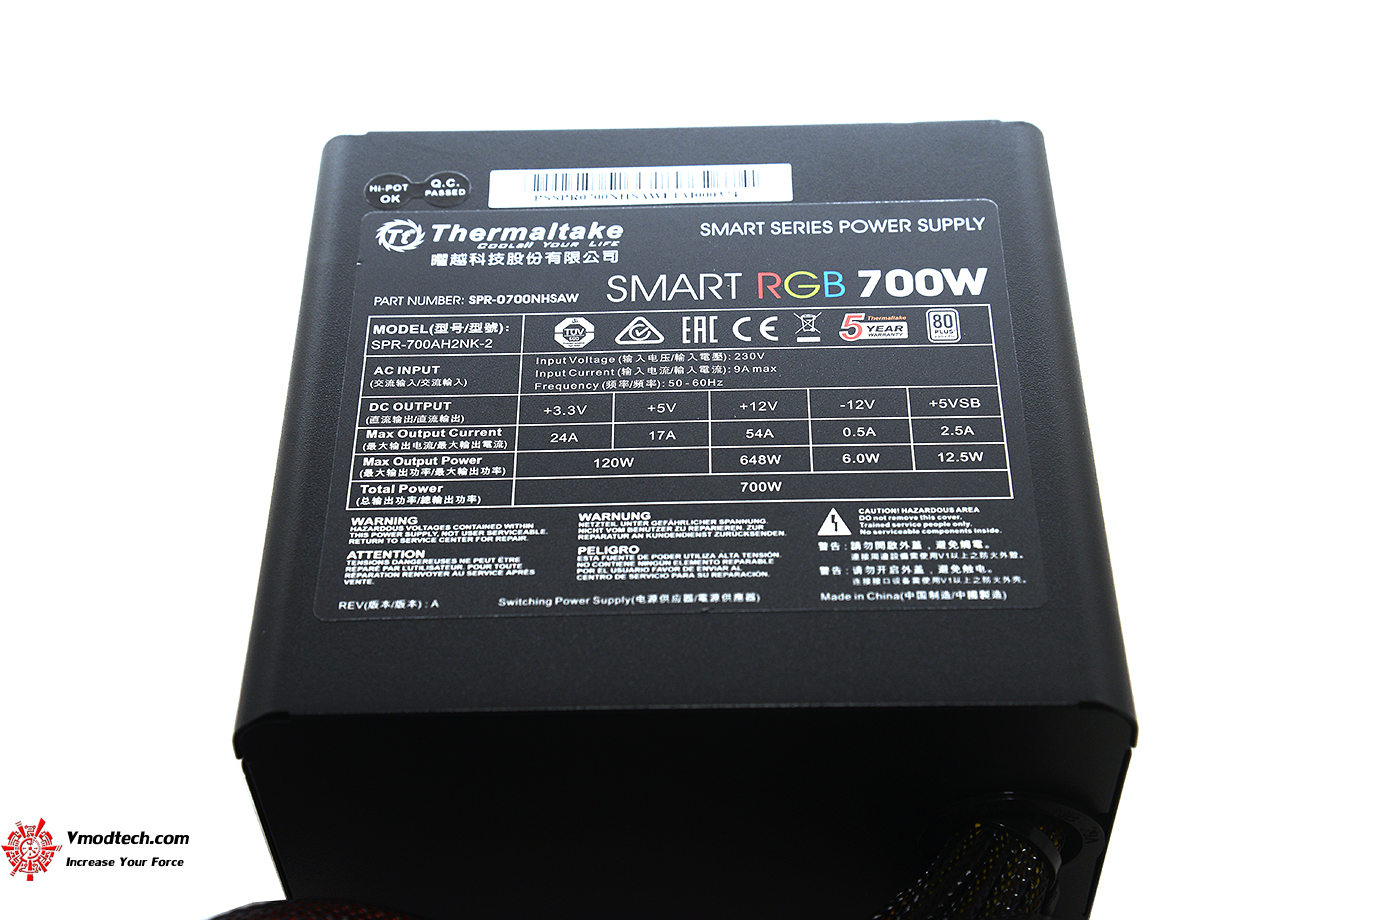 dsc 5406 Thermaltake Smart RGB 700W Review